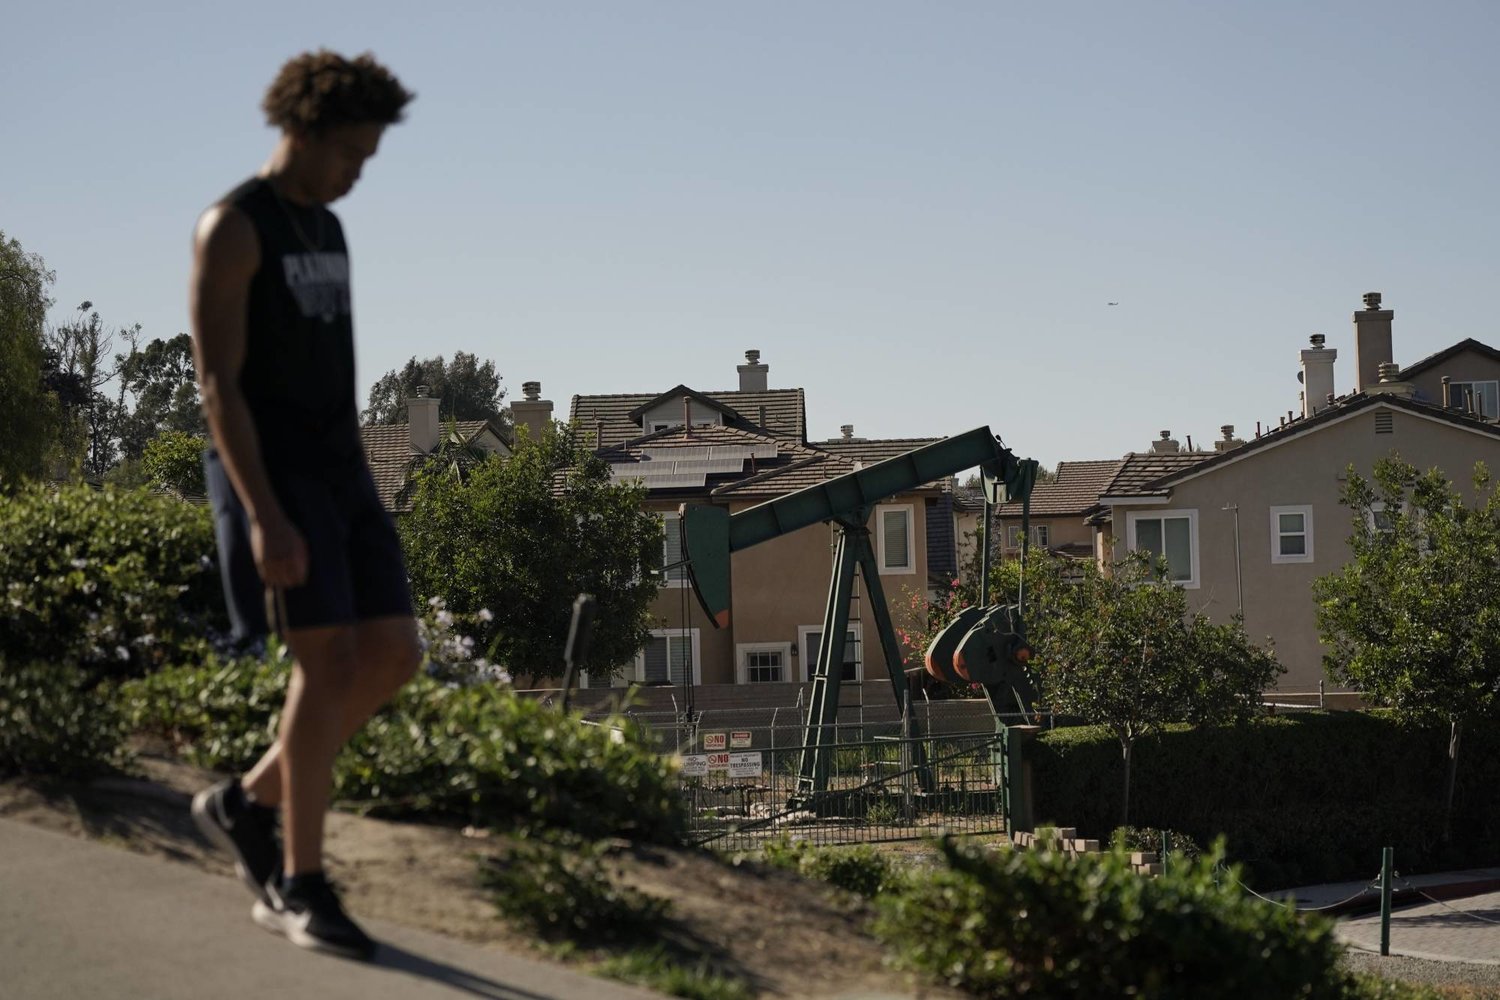 شاب يسير في شارع وبجانبه حفارة تعمل بموقع حفر للنفط بجوار المنازل بكاليفورنيا (أ.ب)